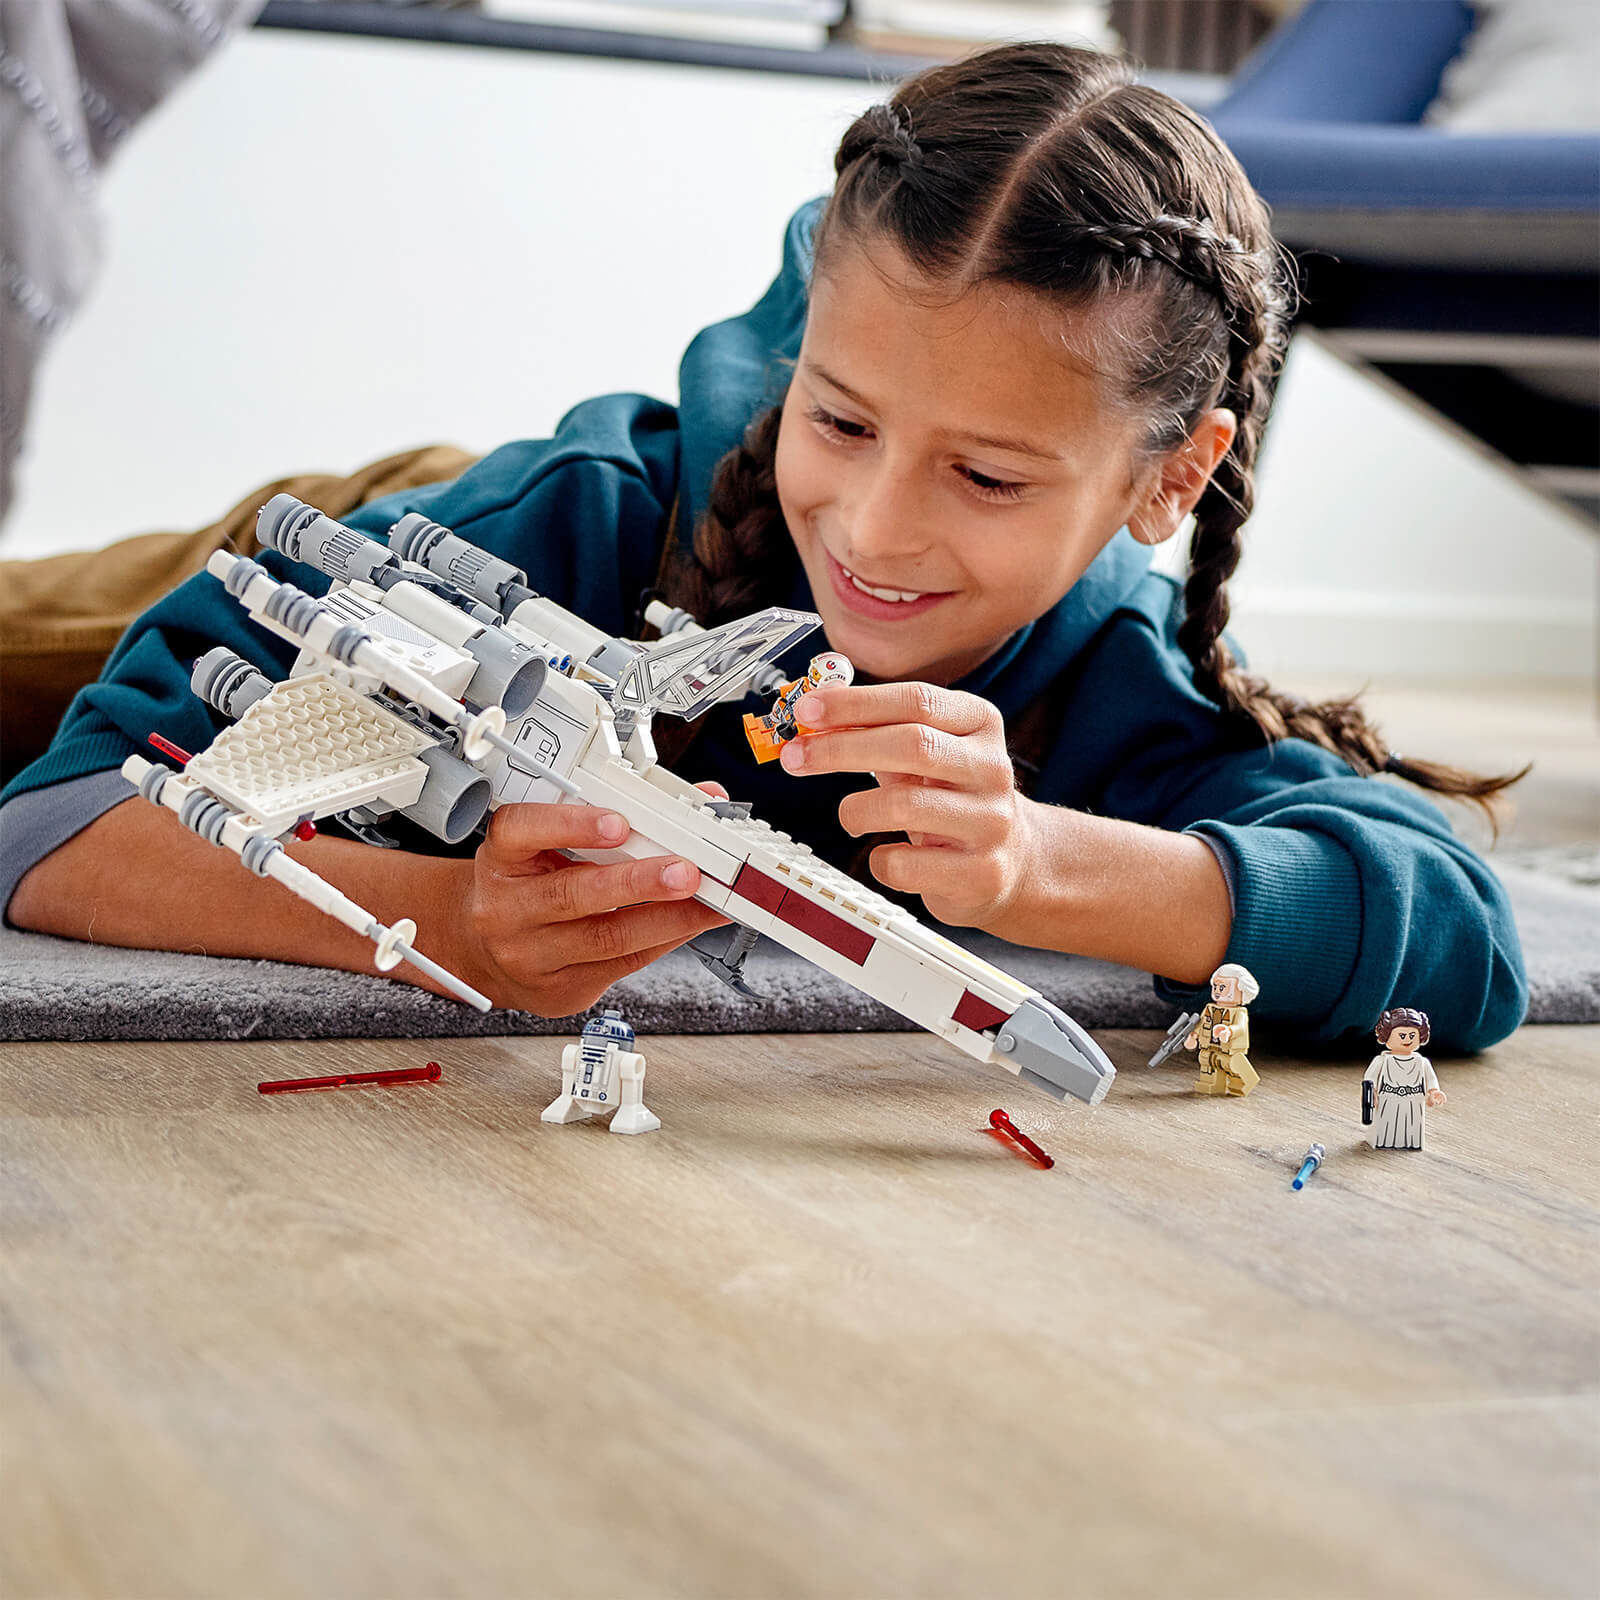 LEGO Star Wars - Luke Skywalkers Iconic X-wing Fighter (75301).